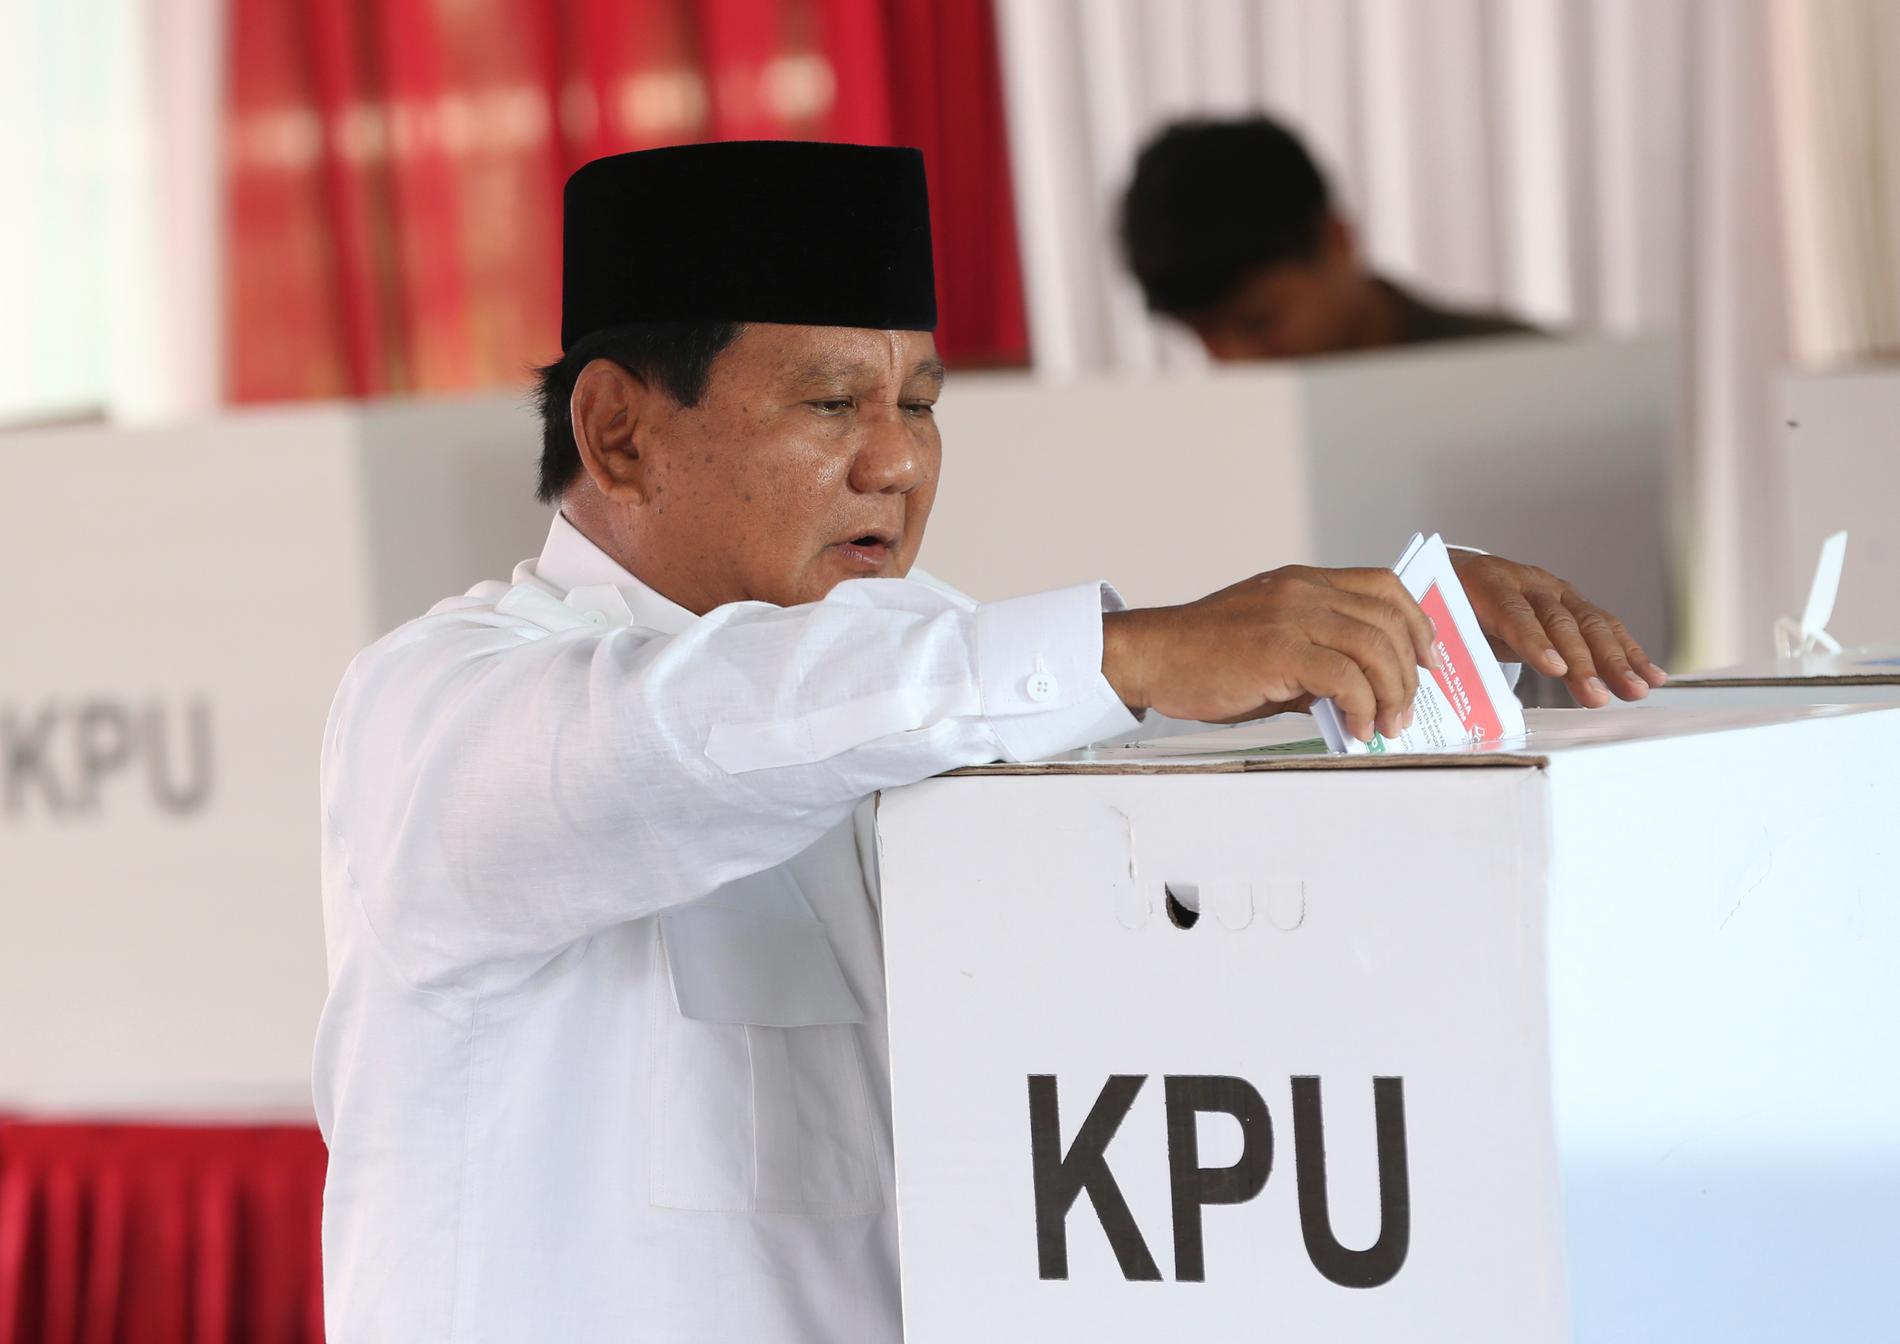 Presidentkandidaten Prabowo Subianto säger sig vara optimistisk trots att han ligger under i opinionsmätningarna.